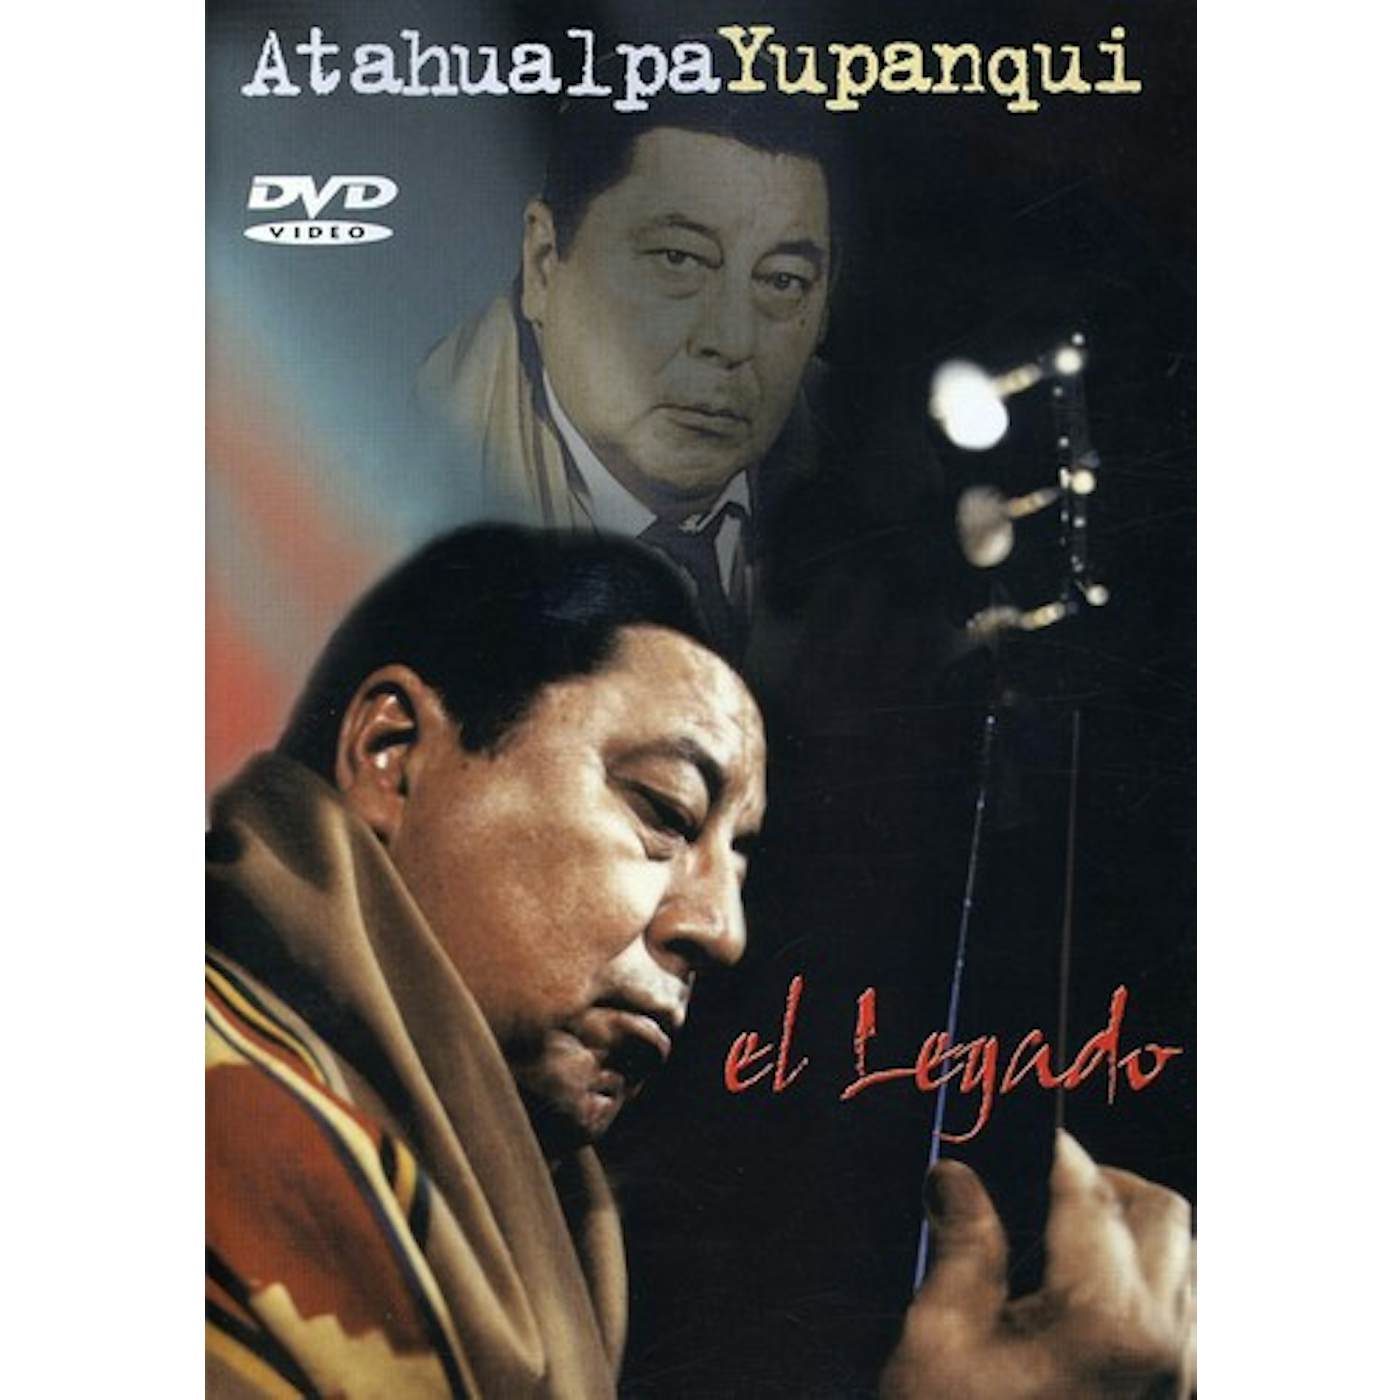 Atahualpa Yupanqui LEGADO CD